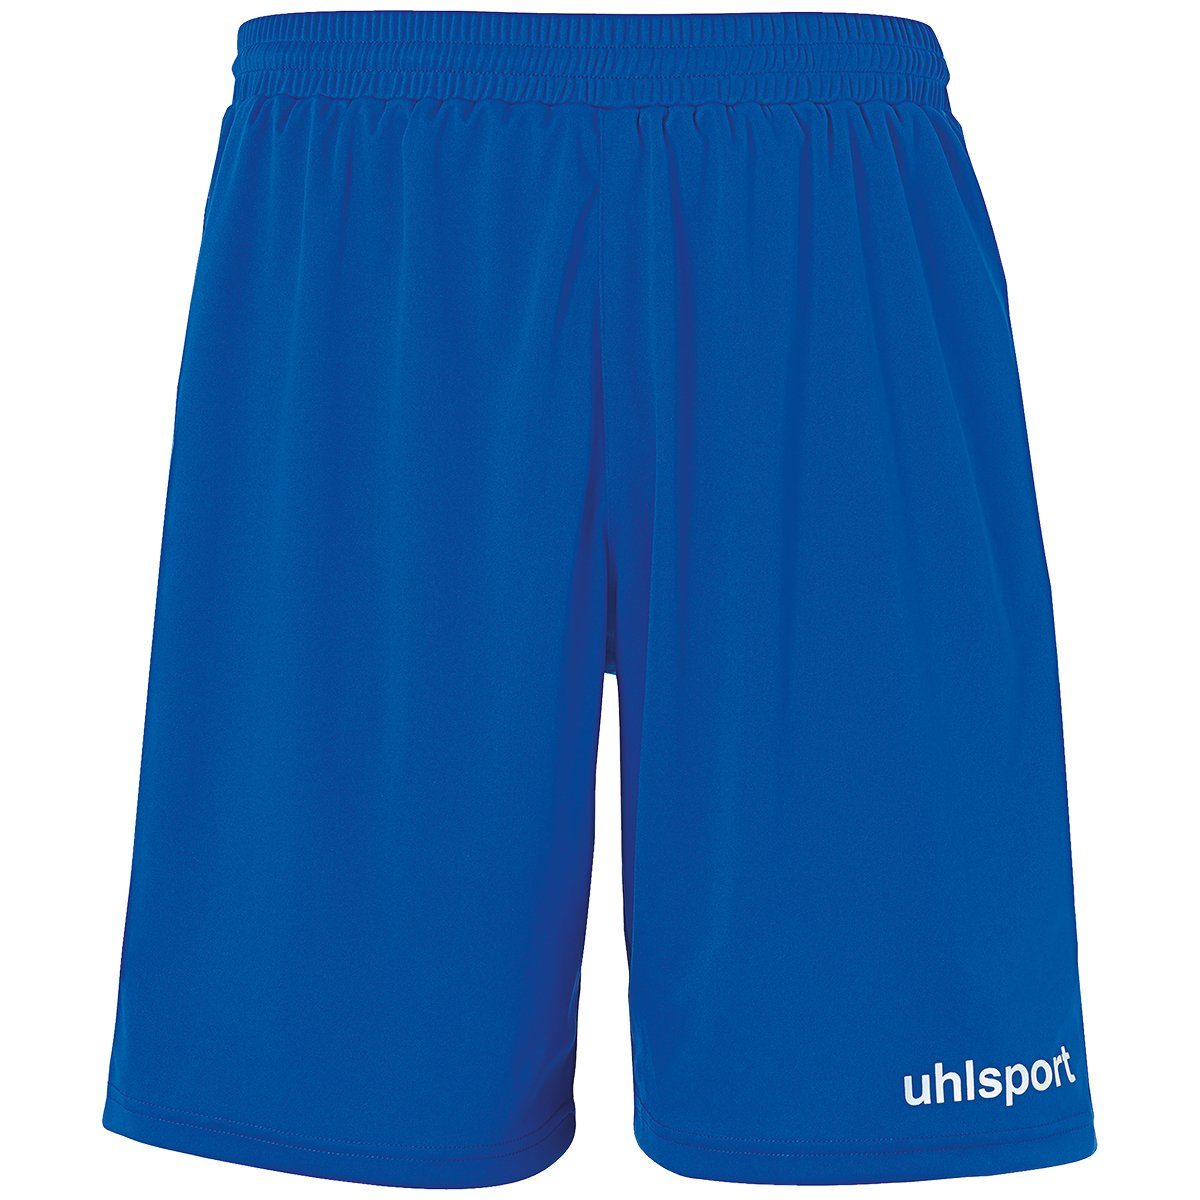 uhlsport Shorts uhlsport Shorts PERFORMANCE SHORTS azurblau/weiß